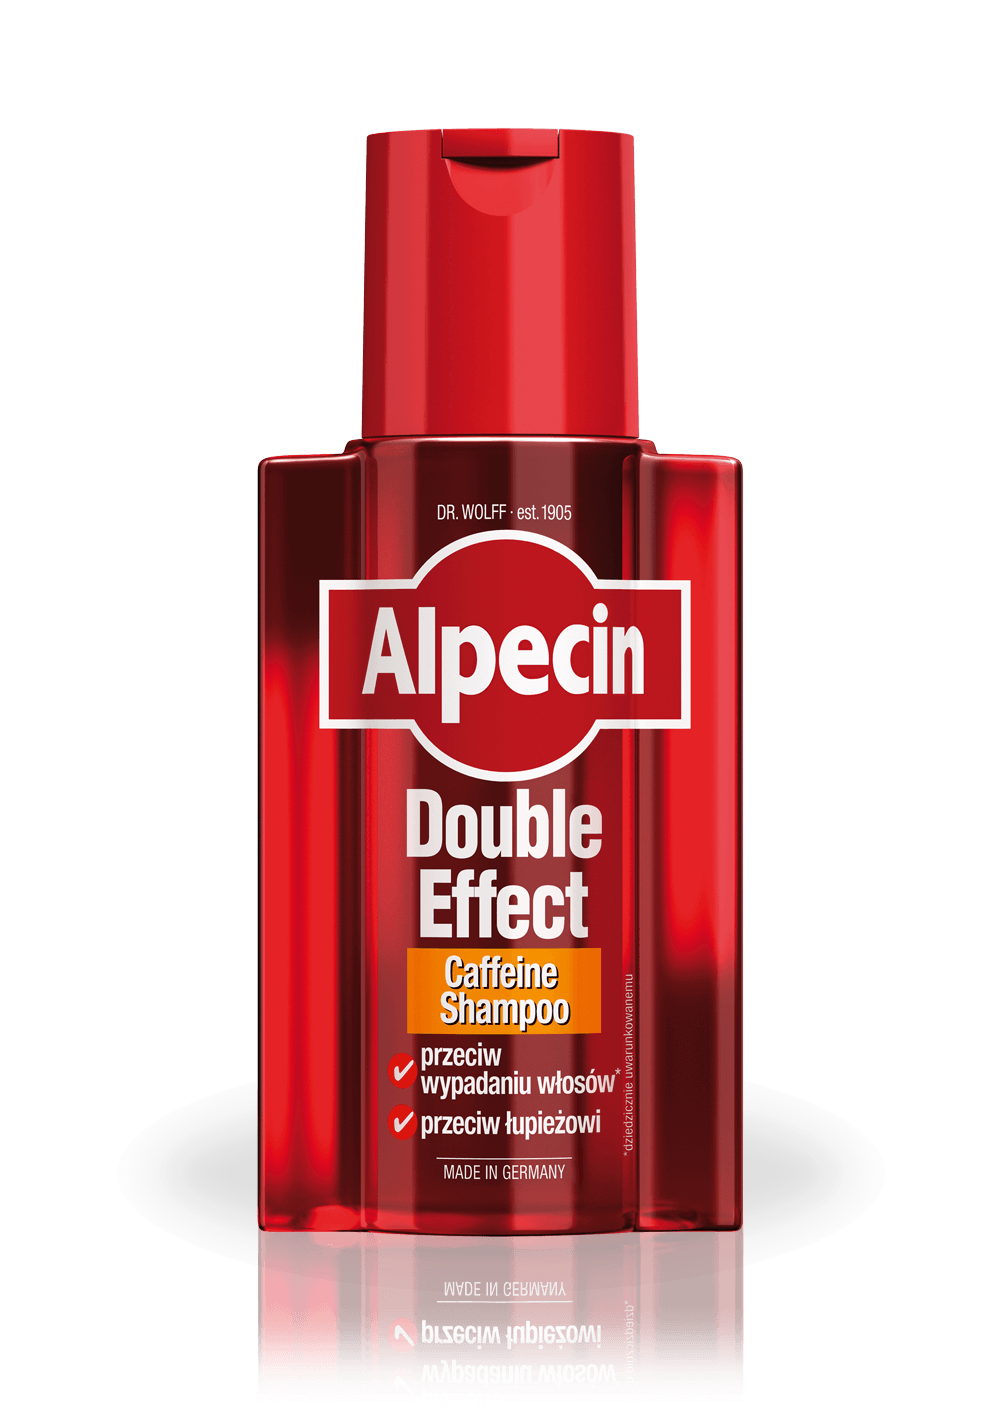 alpecin caffeine szampon do włosów c1